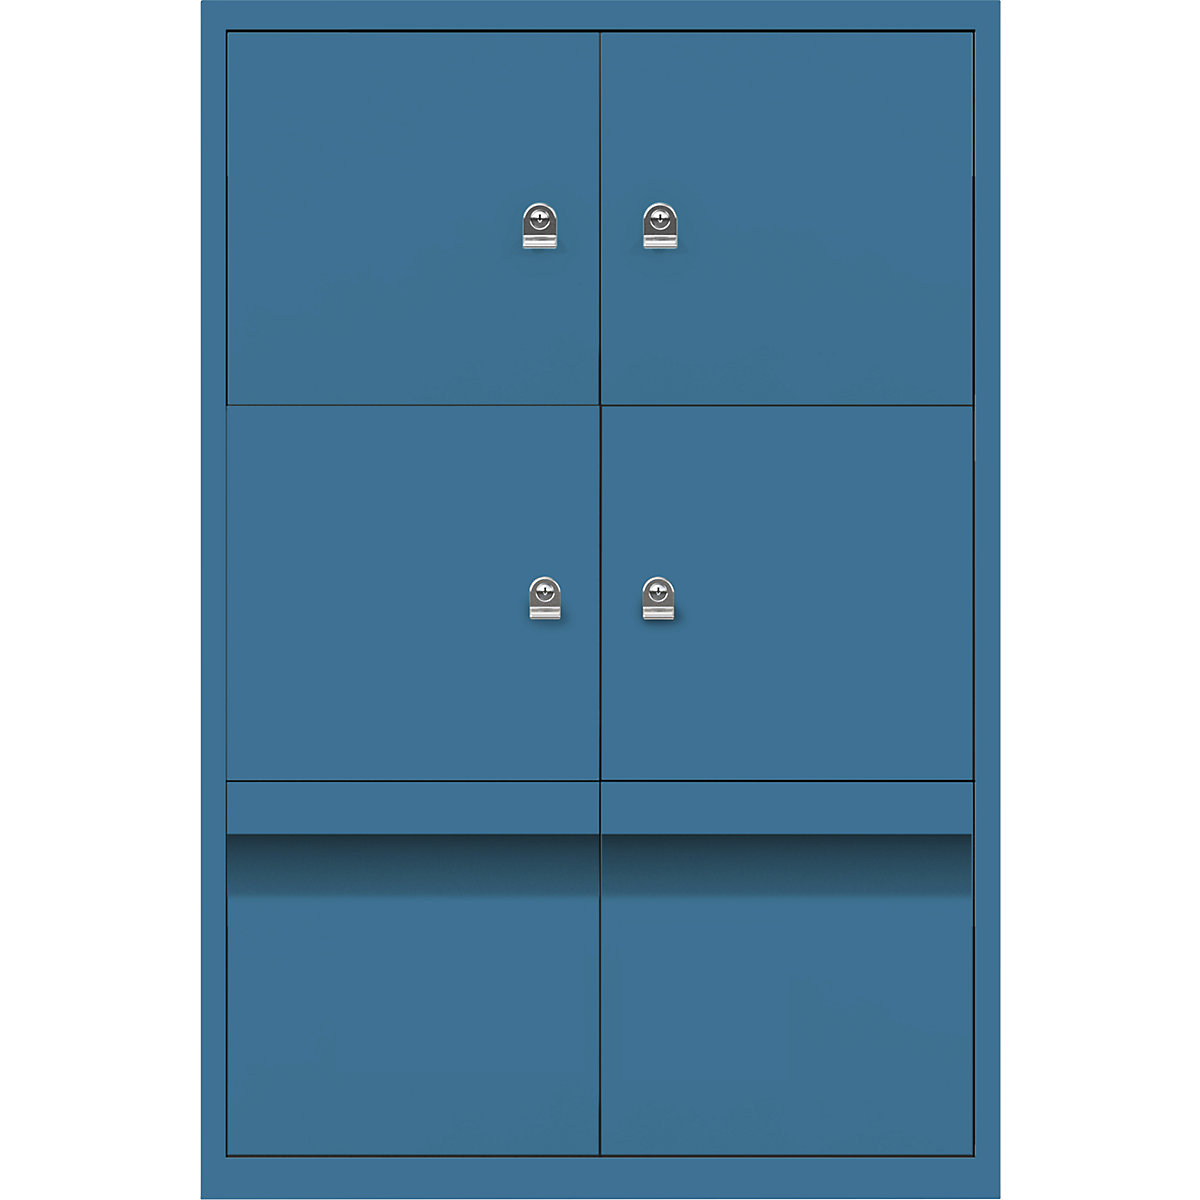 Ormar LateralFile™ Lodge – BISLEY, s 4 pretinca sa zaključavanjem i 2 ladice, visina po 375 mm, u azurno plavoj boji-23